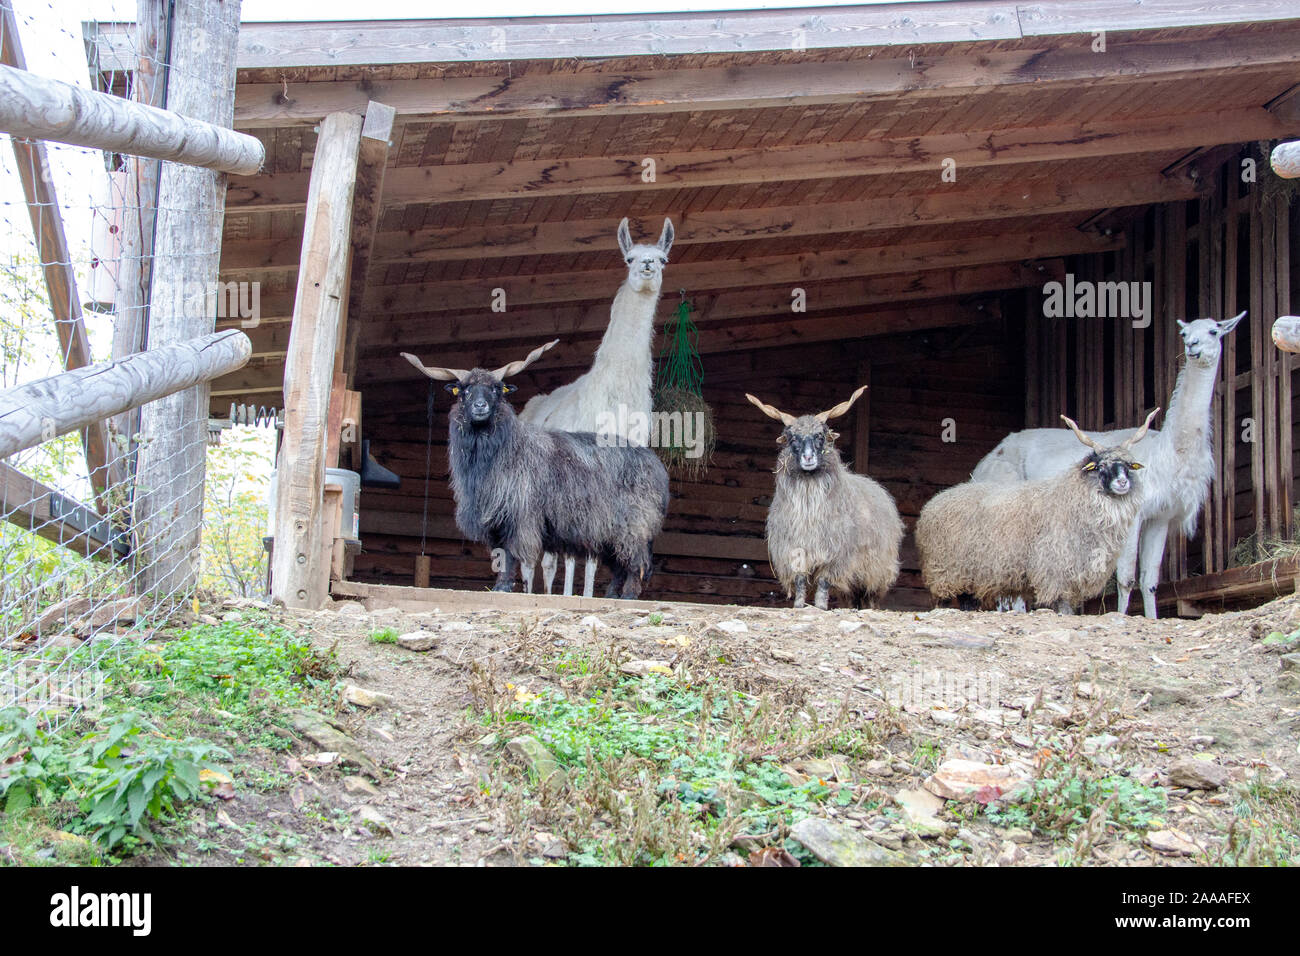 Vista de dos llamas y tres rompecabezas húngaro ovejas en su banquillo Foto de stock